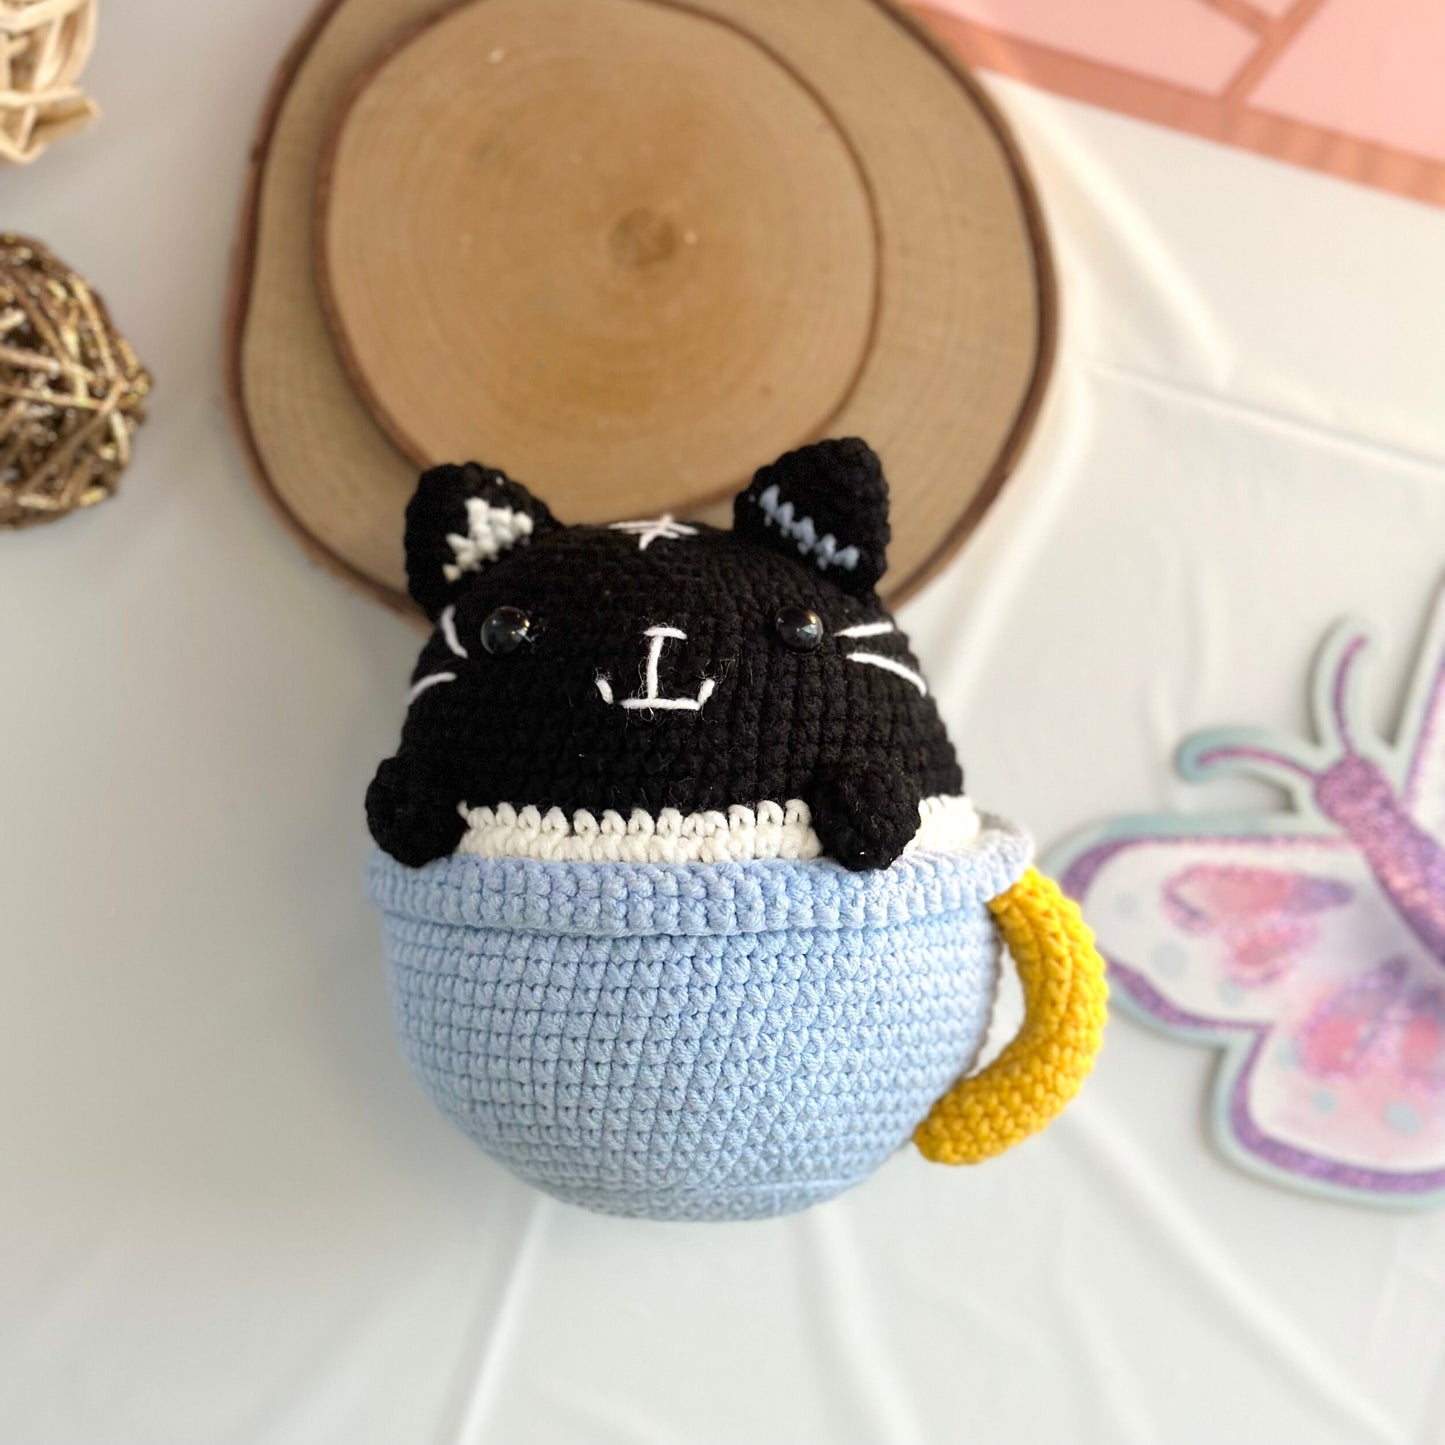 Handmade Kitten in the cup, crochet Kitten in the cup, amigurumi Kitten in the cup, soft toy for baby, toddler, kid, adult hobby